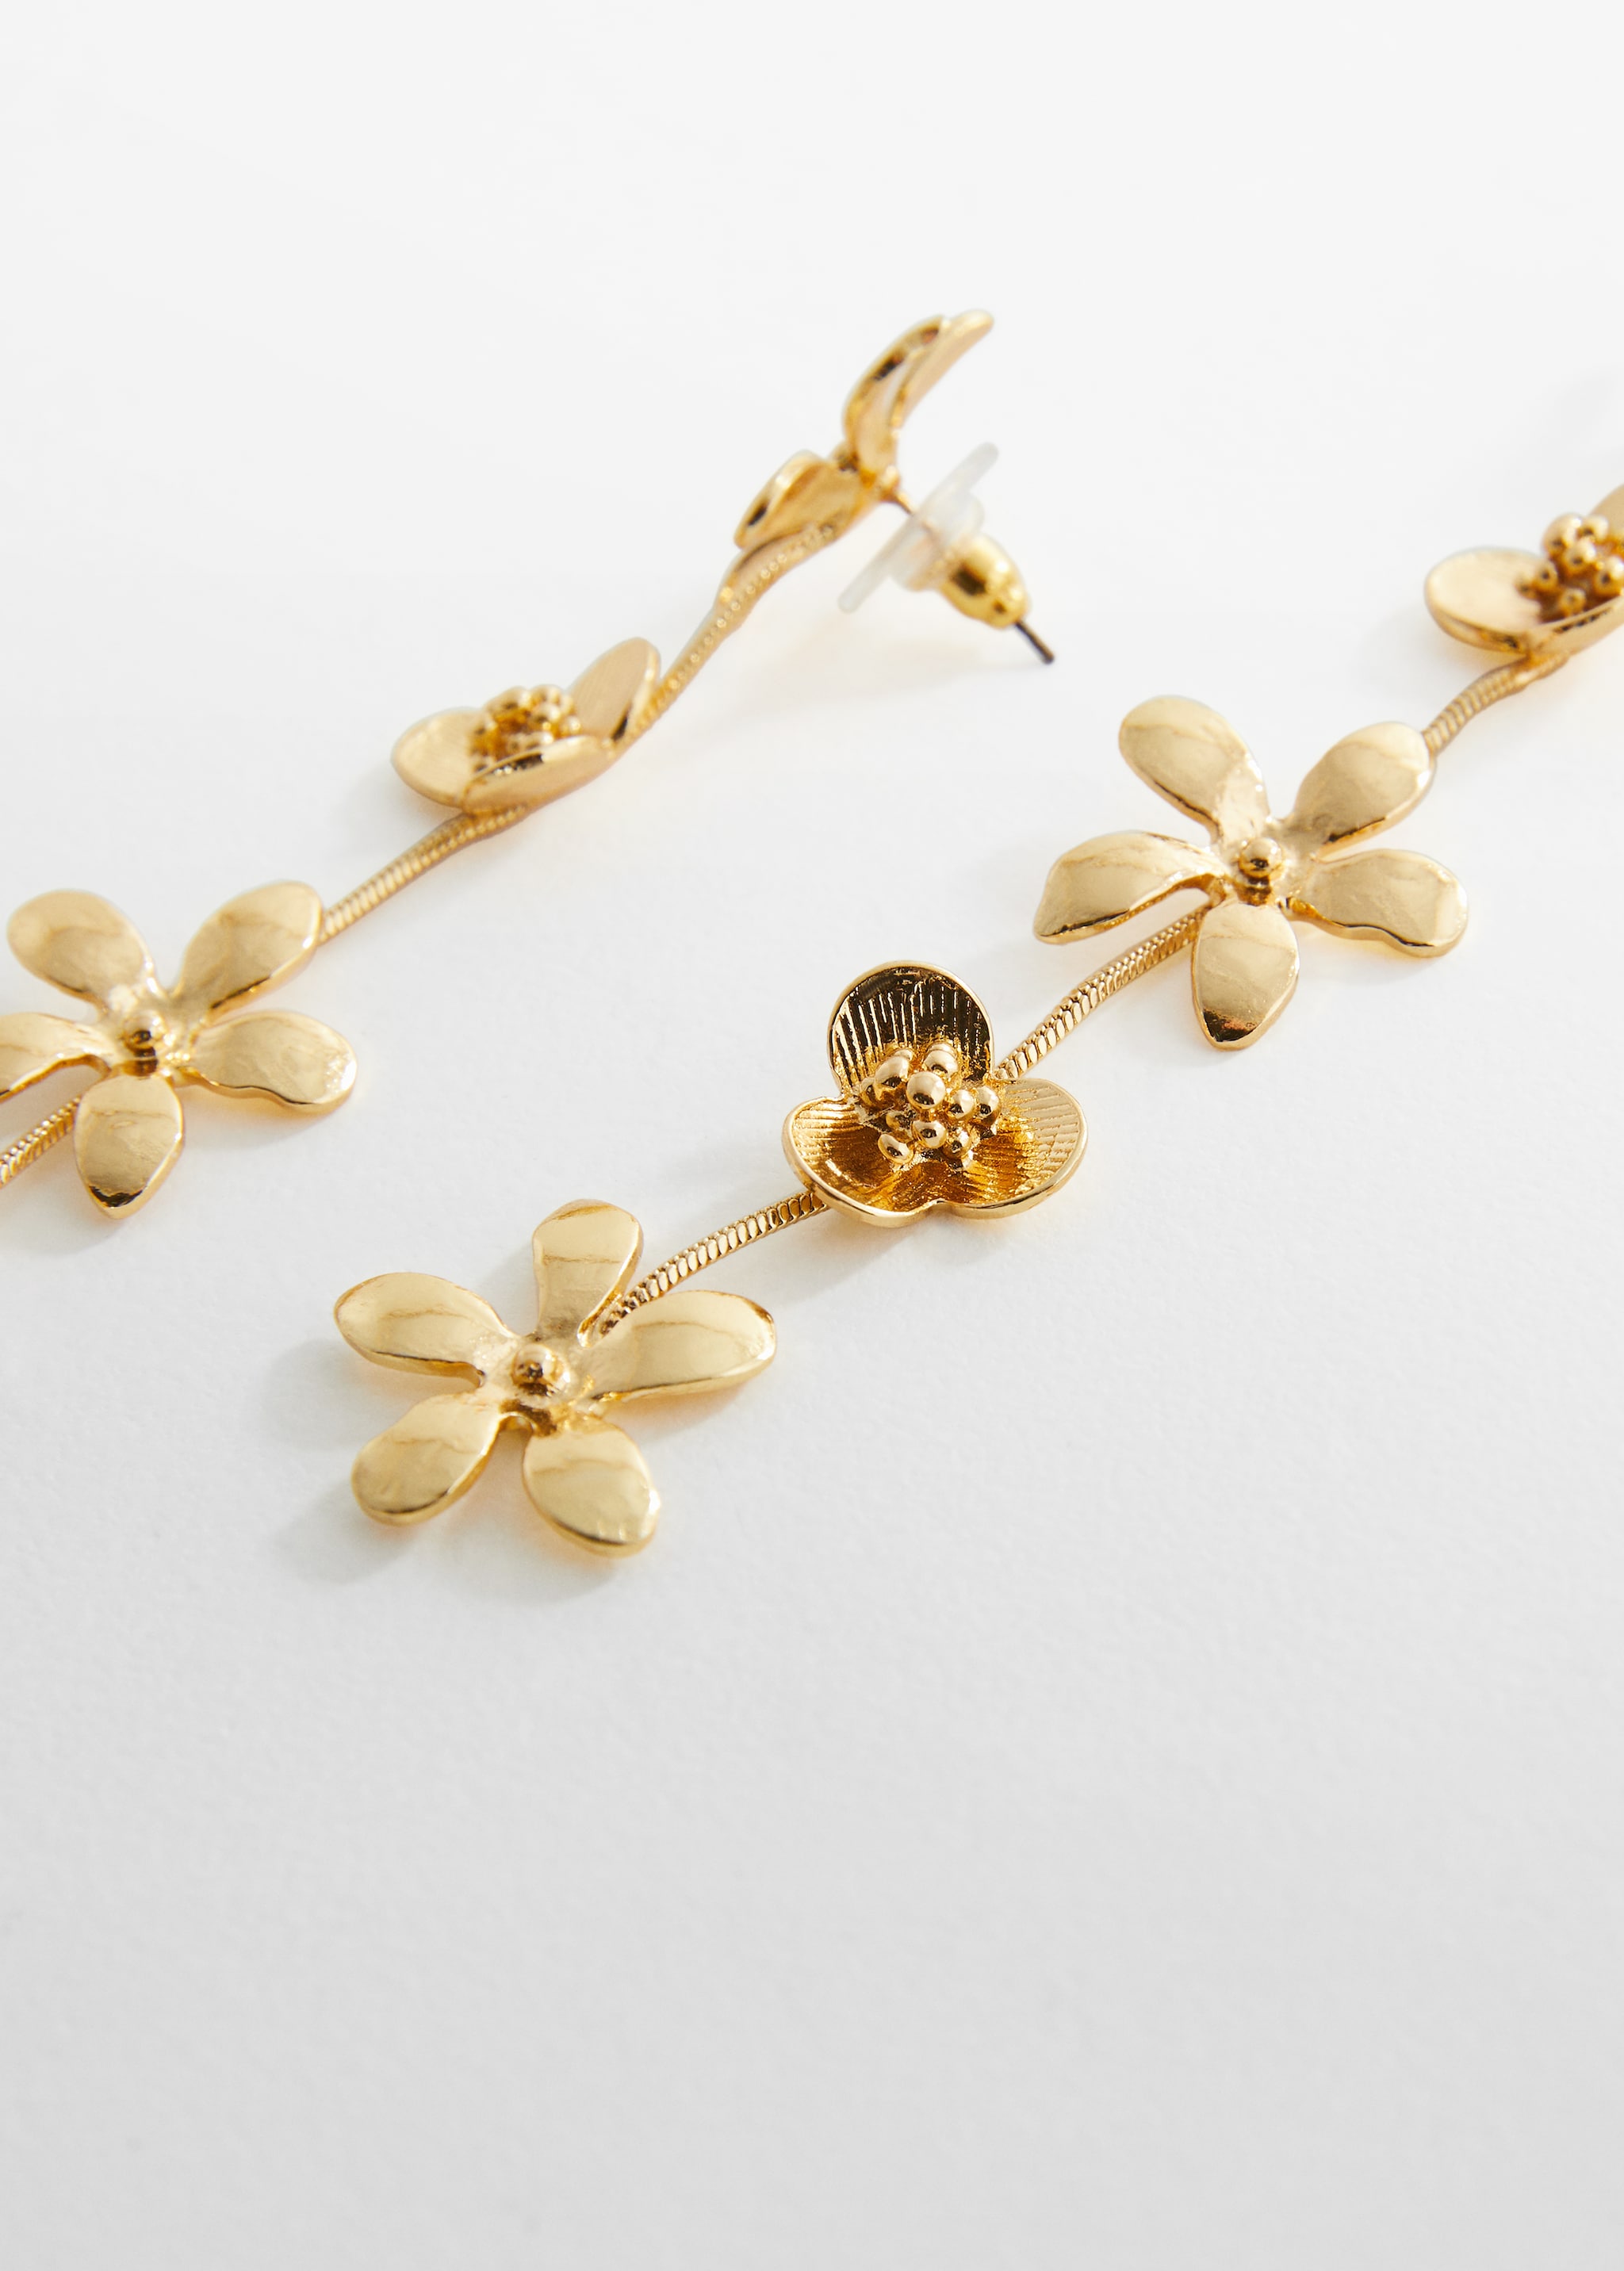 Flower pendant earrings - Medium plane